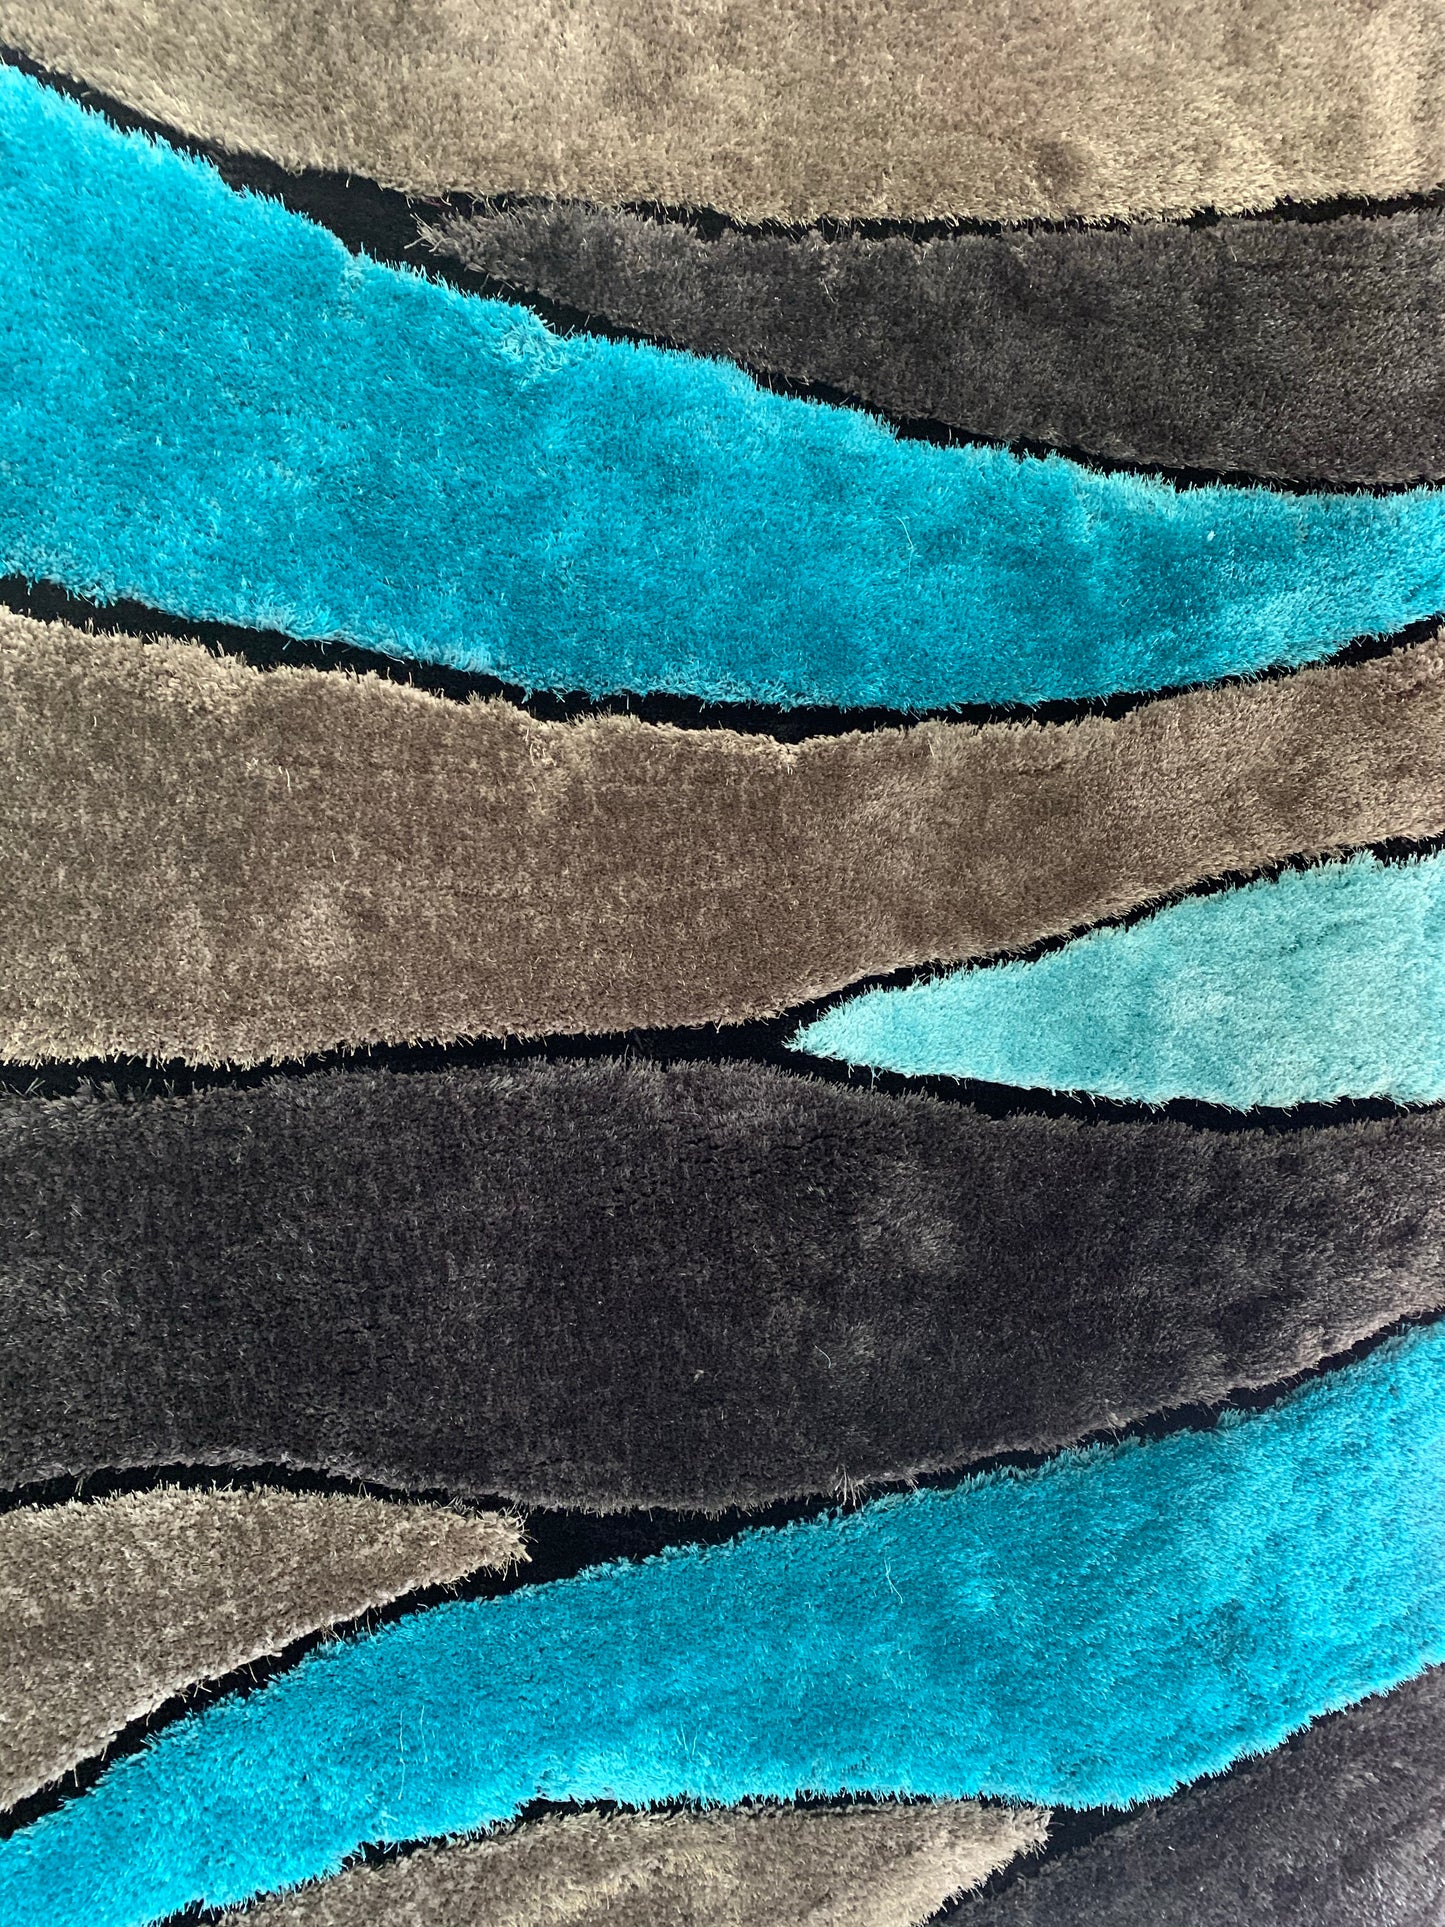 Living Shag Waves Soft Plush Design 3D Effect Area Rug/ Carpet Aqua Blue 